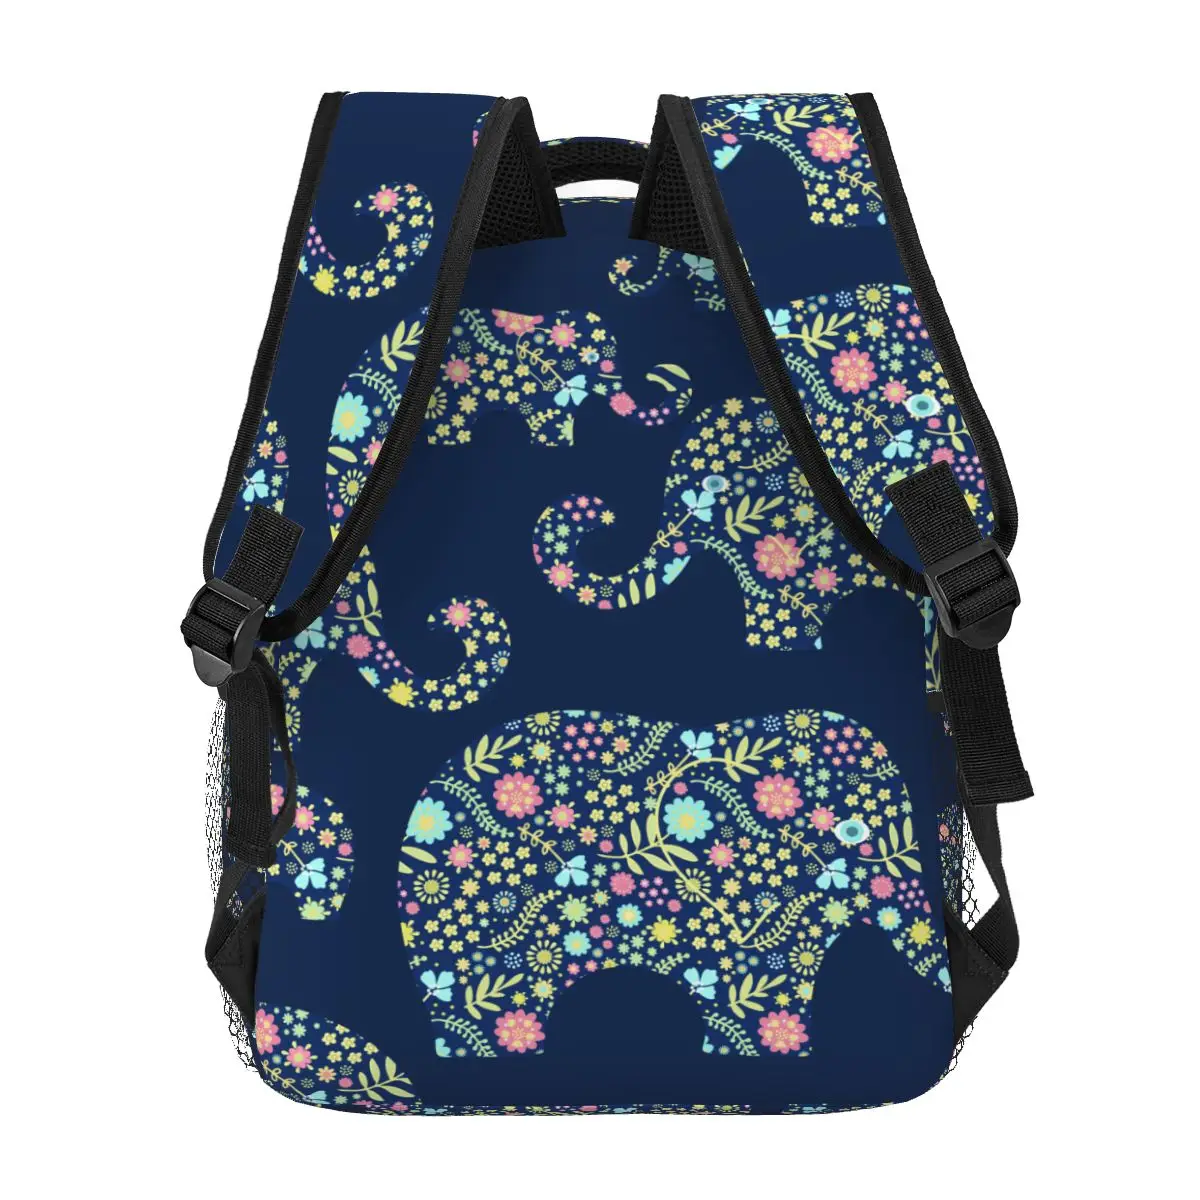 Повседневный новый простой женский рюкзак для подростковых путешествий, сумка через плечо с цветочными слонами на синем фоне - 3